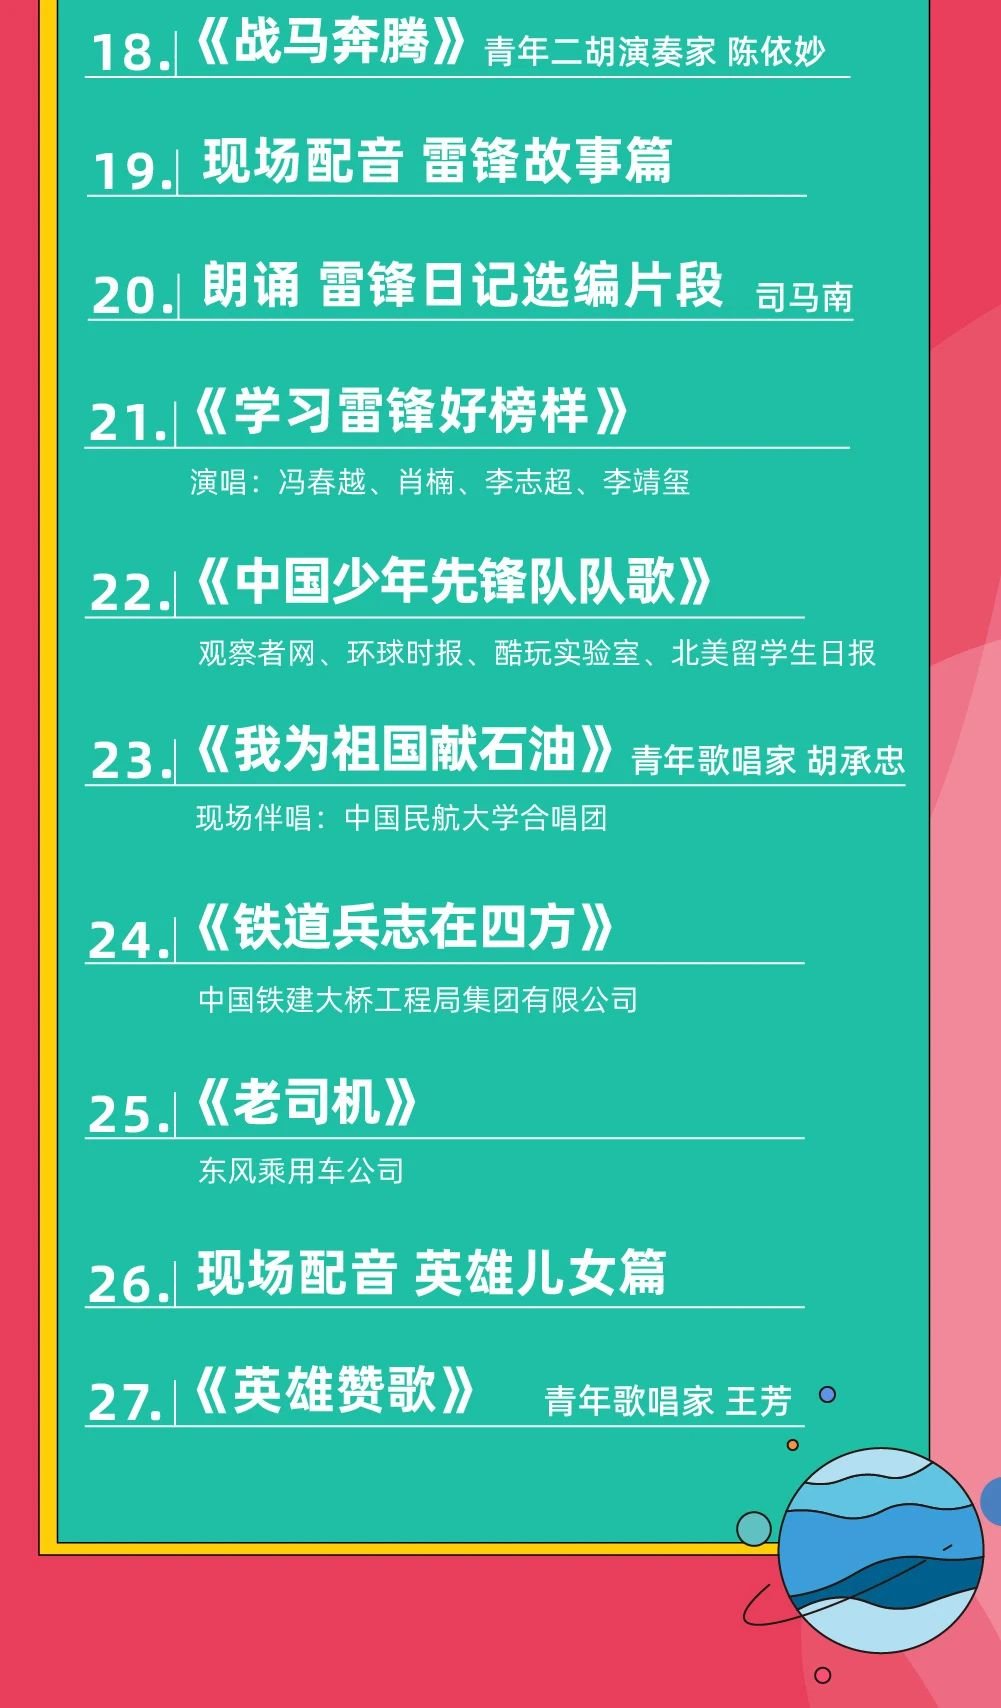 中国青年网络音乐节直播链接+节目单 中国青年网络音乐节2021